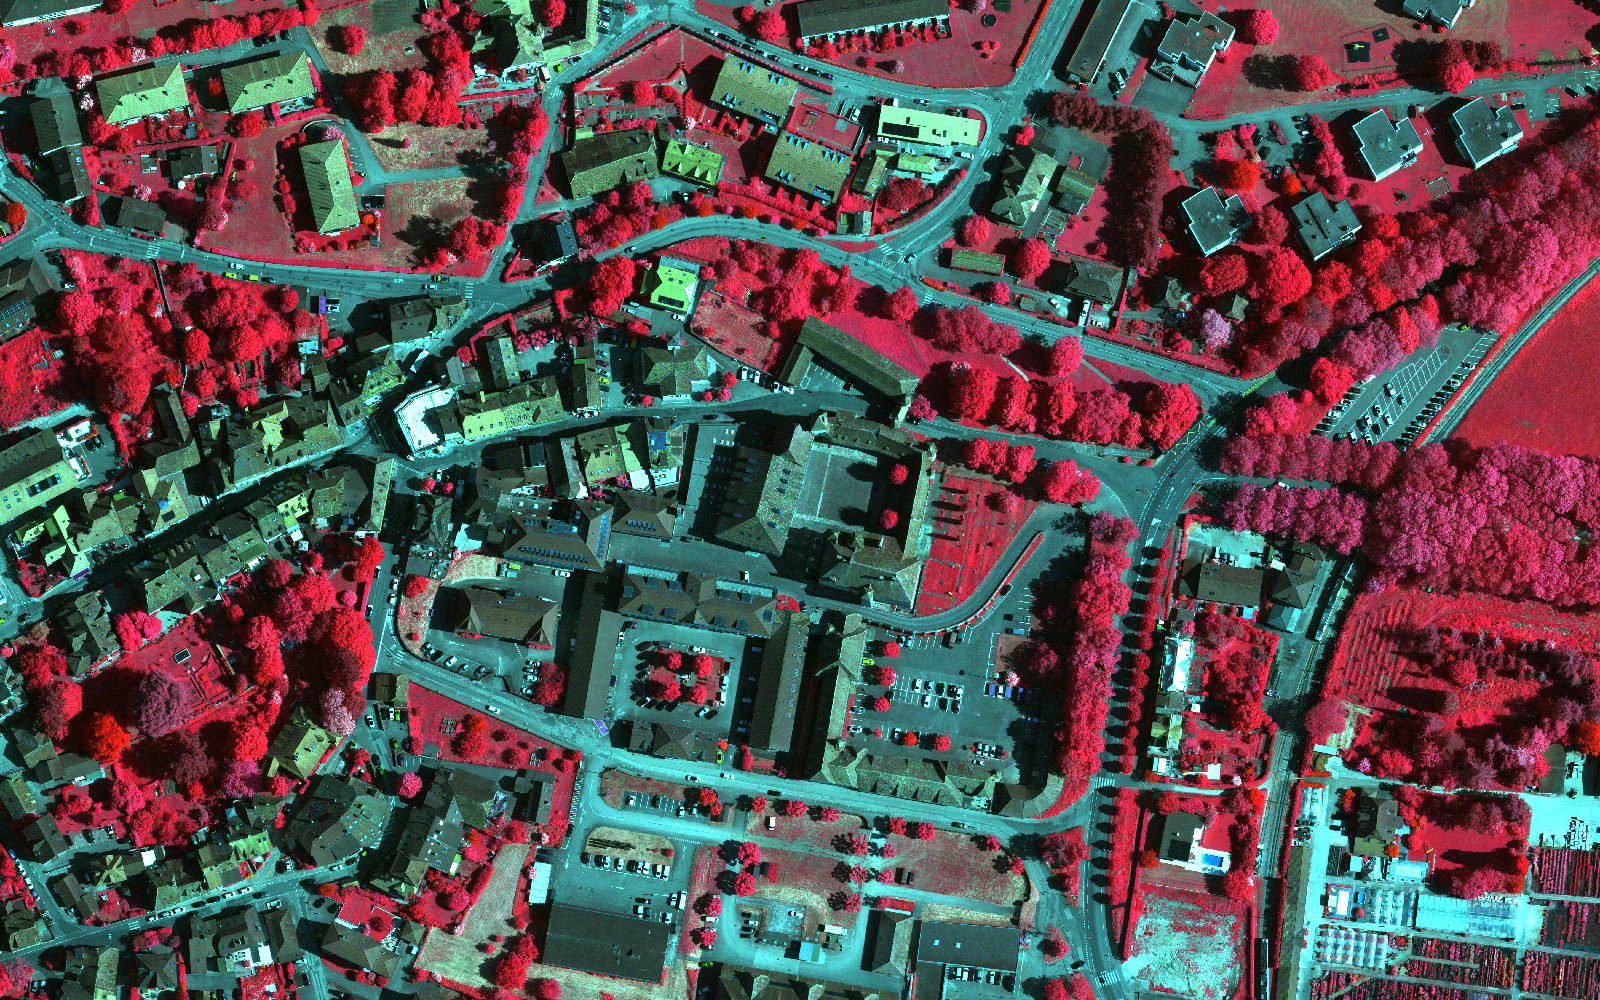 L'image montre une vue aérienne infrarouge de la région de la vieille ville de Colombier (NE).  